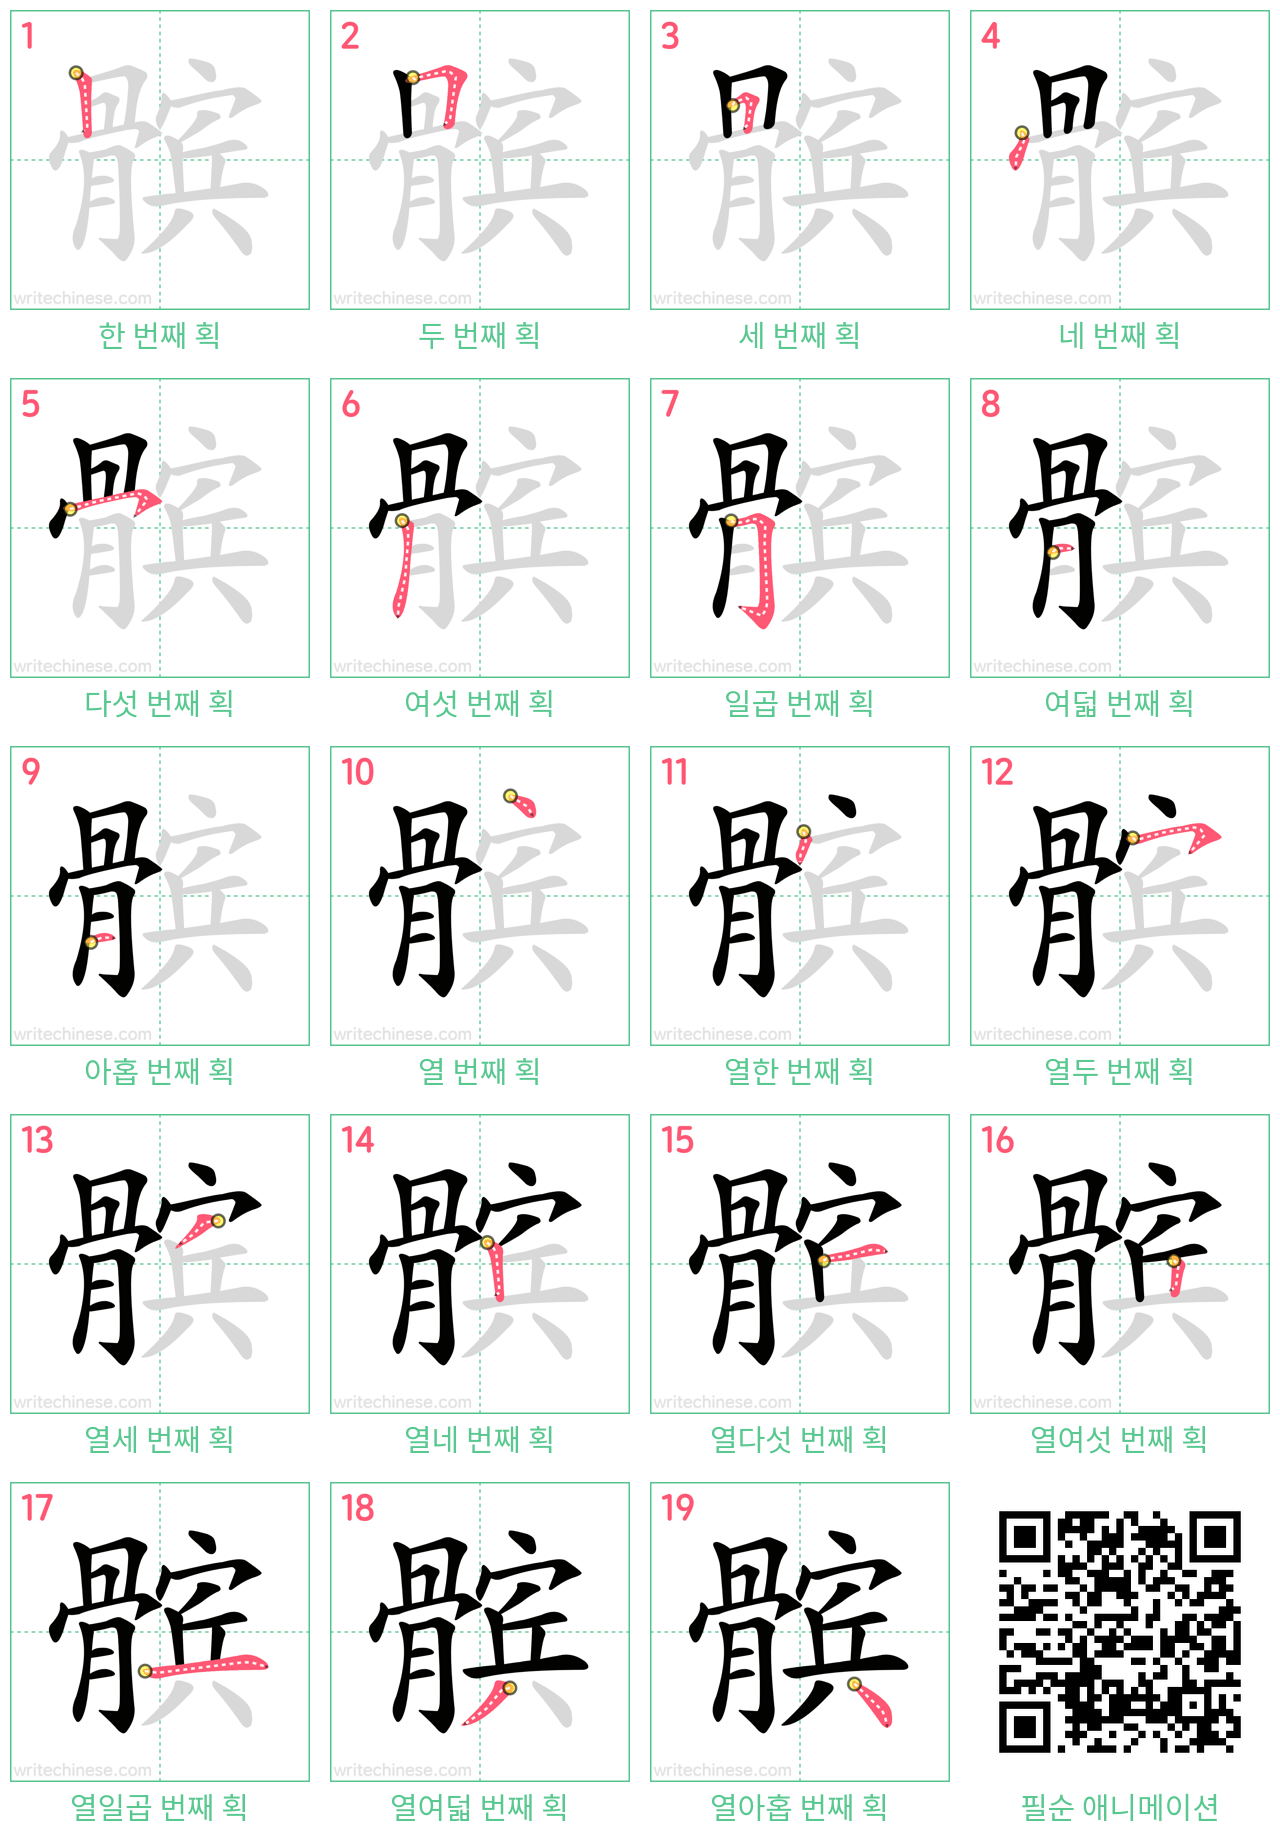 髌 step-by-step stroke order diagrams